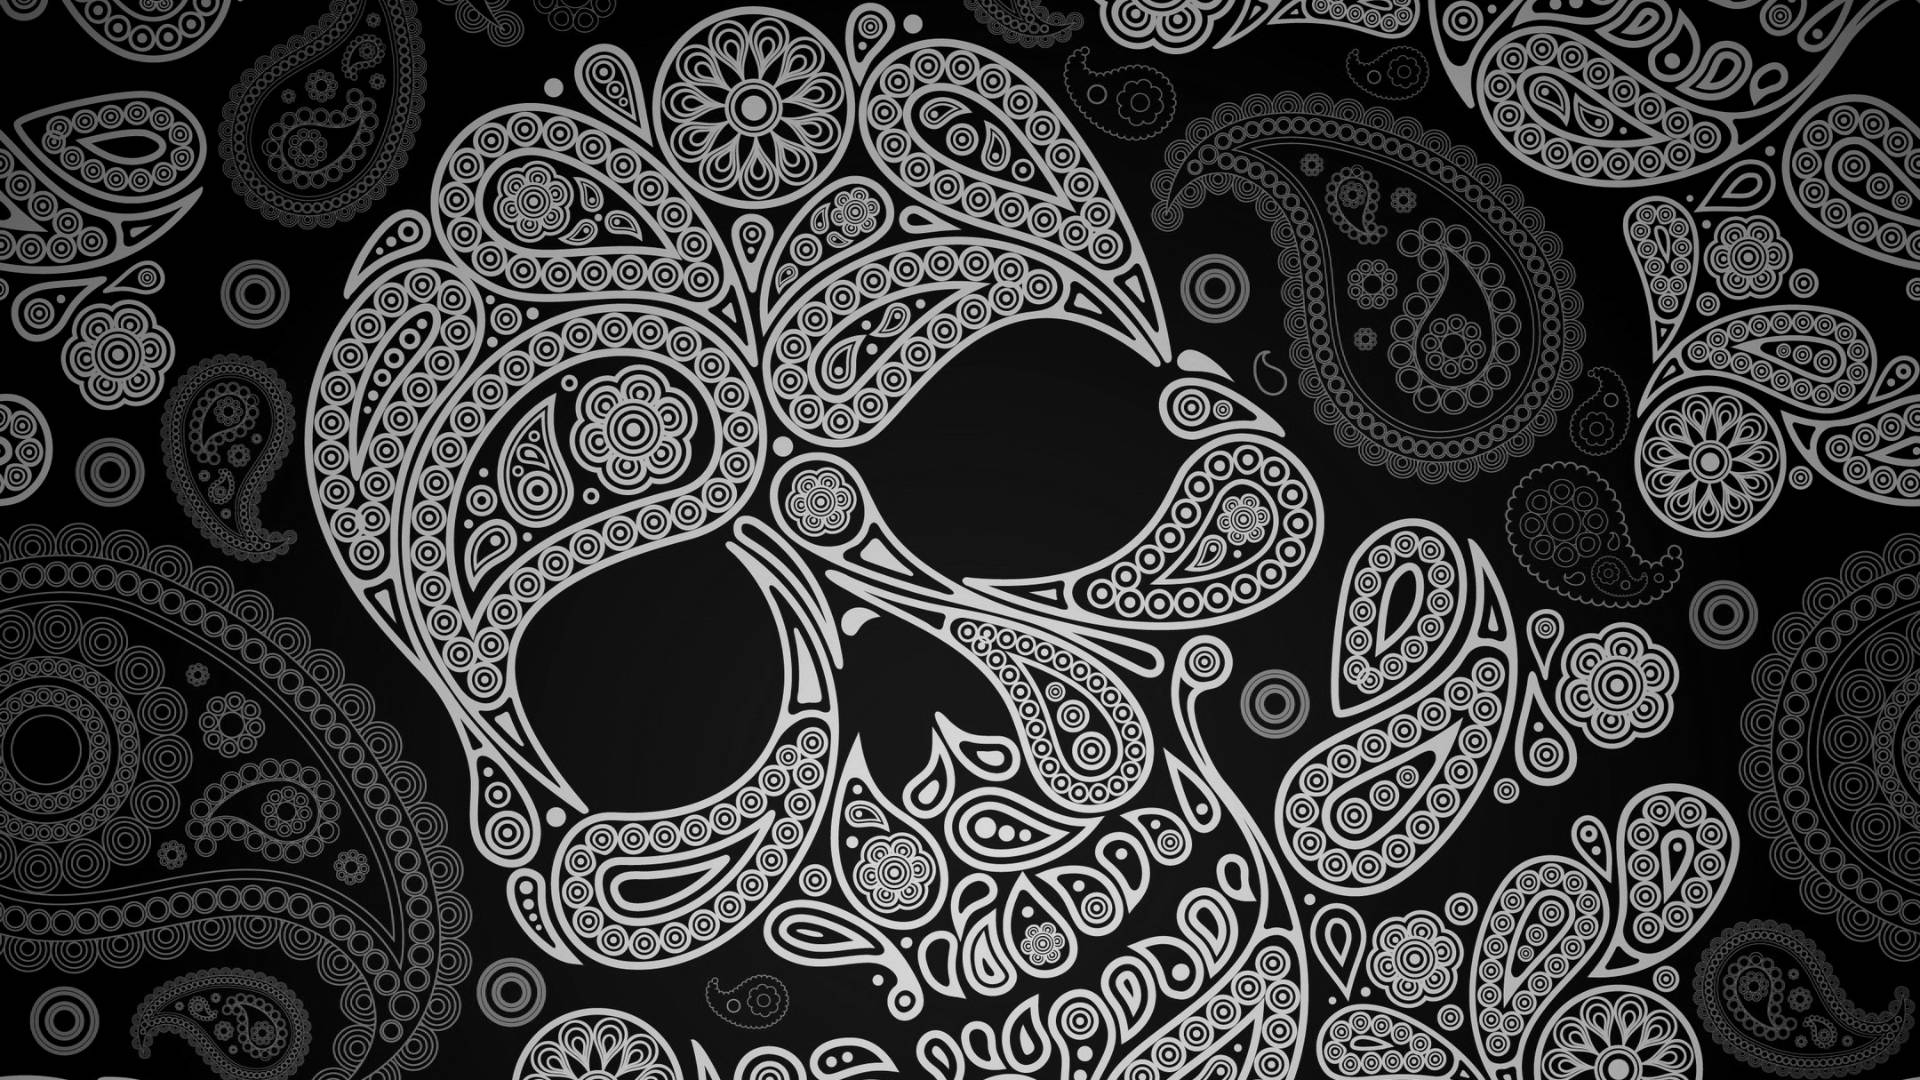 Abstract Sugar Skull On Black Wallpaper